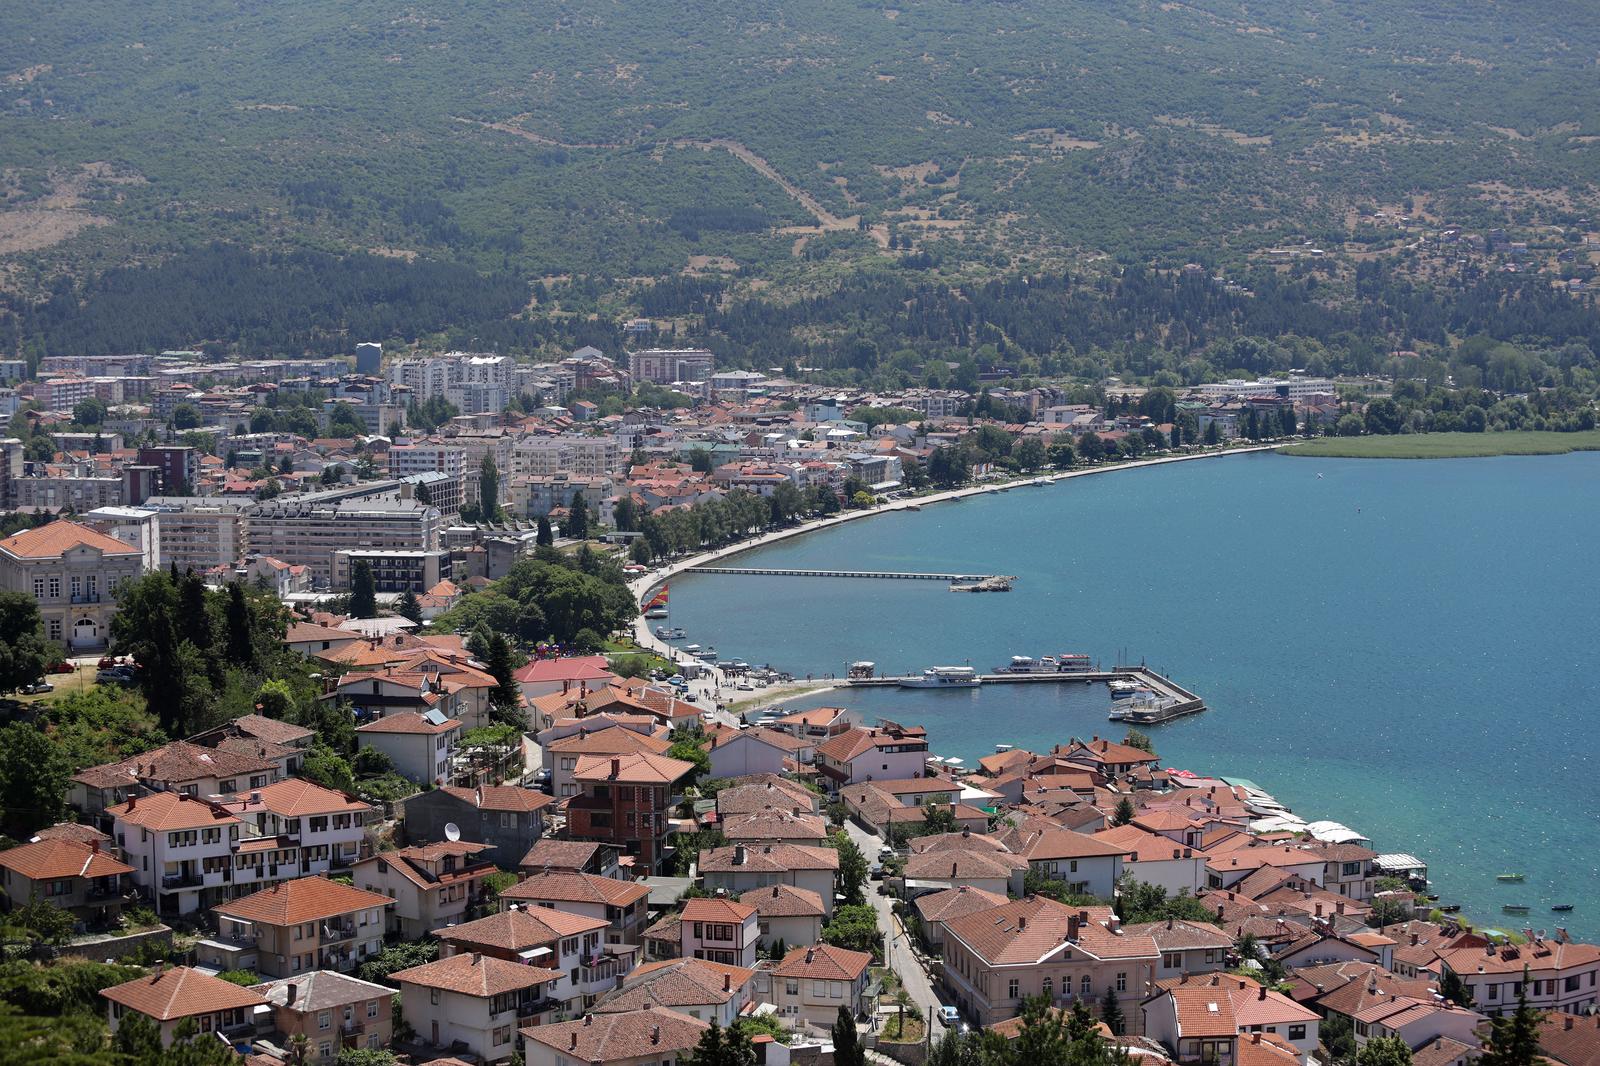 05.07.2017., Ohrid, Makedonija -   Ohridsko jezero je pogranicno jezero na granici izmedju Albanije i Makedonije. Najdublje je balkansko i jedno od najdubljih i po nastanku, najstarijih jezera Europe i nalazi se na nadmorskoj visini od 695 metara sa subinom od 288 metara i prosjecne dubine od 155 metara.  Maksimalne duzine je 30,4 km i sirine od oko 14,8 km. Duzina obale iznosi 87,53 km, od cega je 56,02 km makedonske i 31,51 km albanske obale. Ohrid je grad na jugozapadu Republike Makedonije, na sjeveroistocnoj obali Ohridskog jezera. Grad Ohrid je sjediste opcine Ohrid koja se sastoji od grada Ohrida i jos 28 sela koji zajedno imaju oko 55.000 stanovnika. Grad se prostire po Ohridskom polju, a njegova povijesna jezgra nalazi se na osamljenoj vapnenackoj hridi, visokoj 792 m, koja poput rta ulazi u Ohridsko jezero. Od 1980. godine grad Ohrid i Ohridsko jezero nalaze se na popisu UNESCO-ve Svjetske bastine kao spomenik kulture i spomenici prirode. "nPhoto: Luka Stanzl/PIXSELL